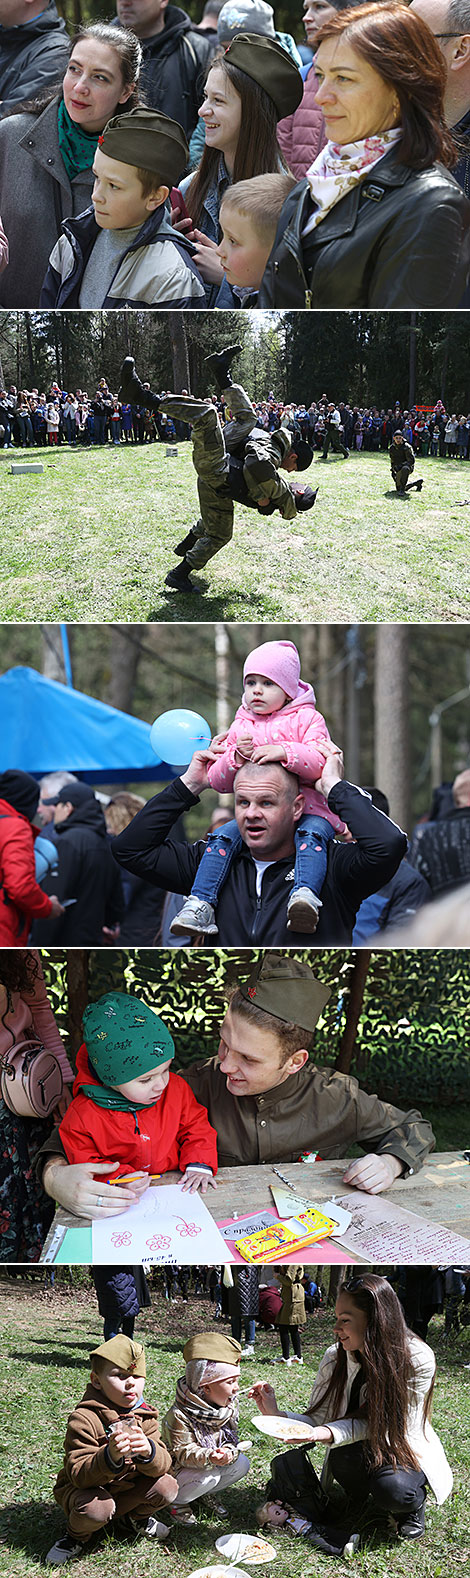 莫吉廖夫佩切尔西基森林公园的大型庆祝活动